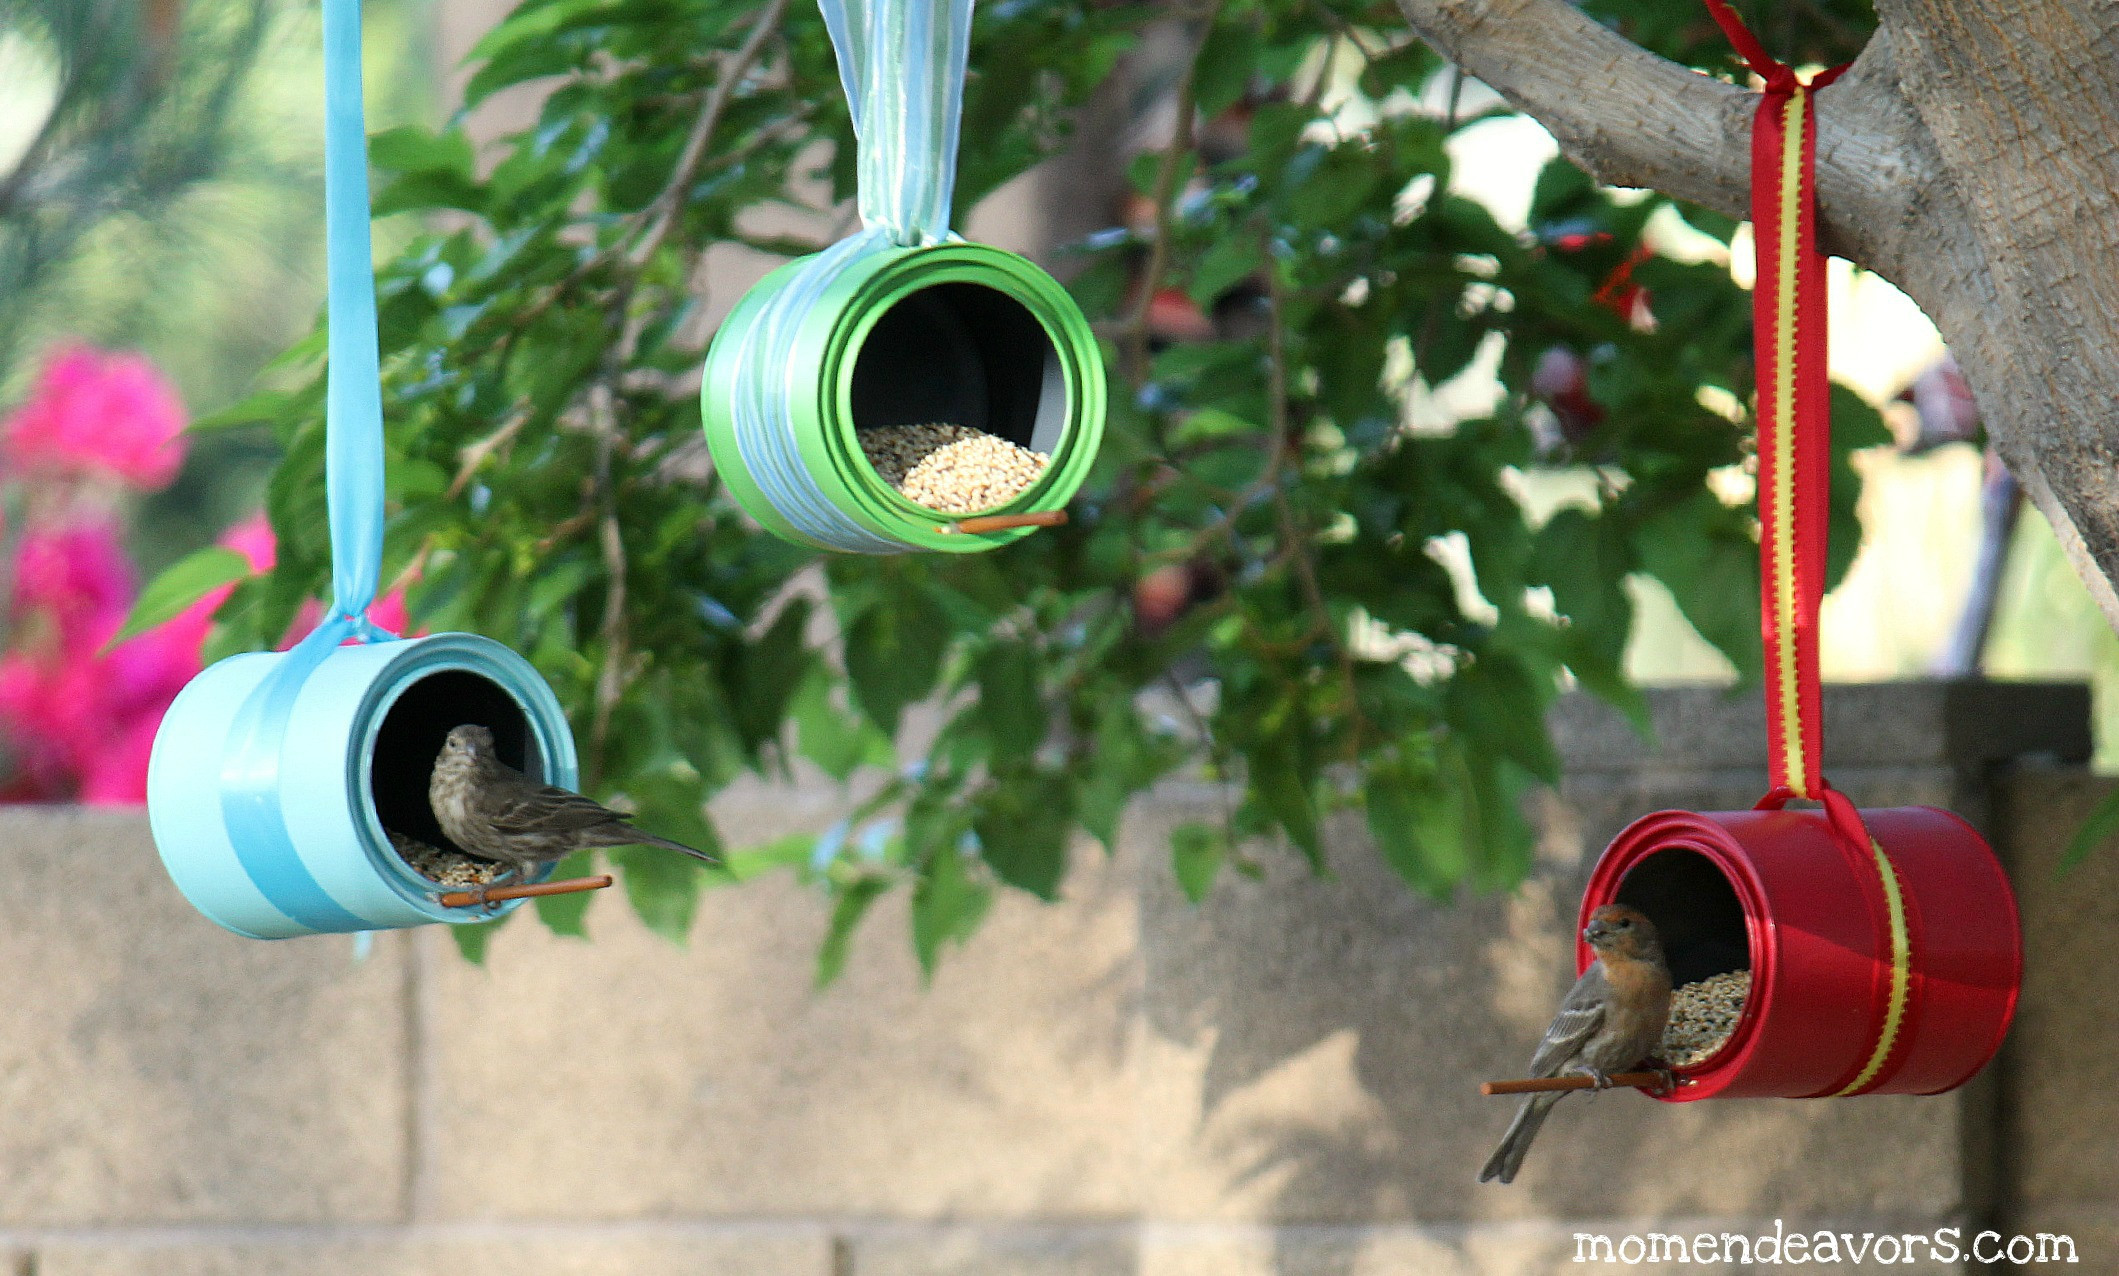 Best ideas about Bird Feeder DIY
. Save or Pin DIY Bird Feeders Now.